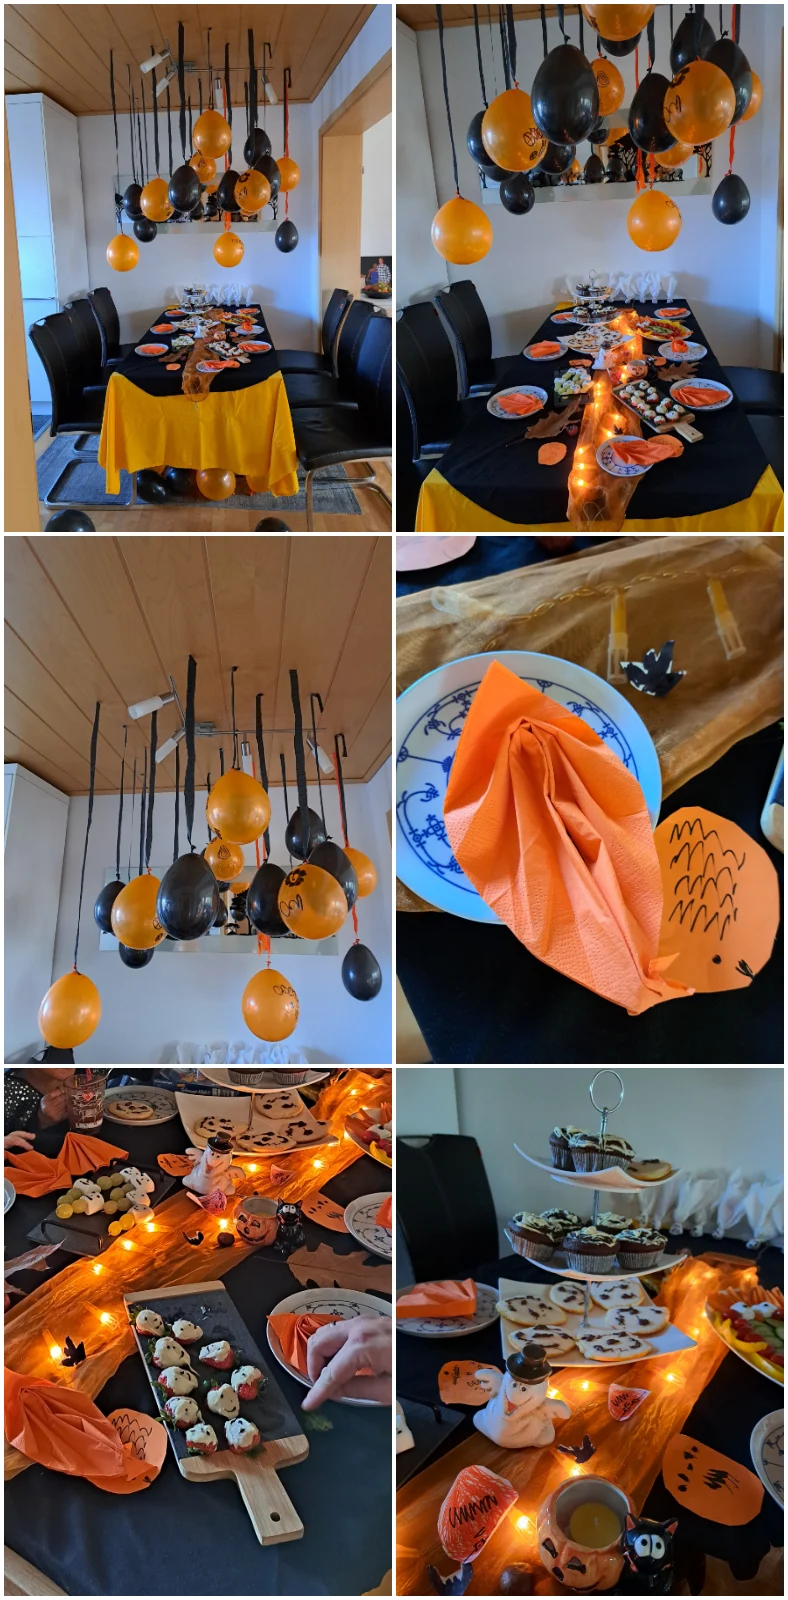 Halloween-Deko: Kreativ gestaltete Dekorationen in Schwarz und Orange, darunter luftige Ballons, Herbstblätter, Kastanien und ein leuchtender Tisch, um die perfekte gruselige Atmosphäre zu schaffen.